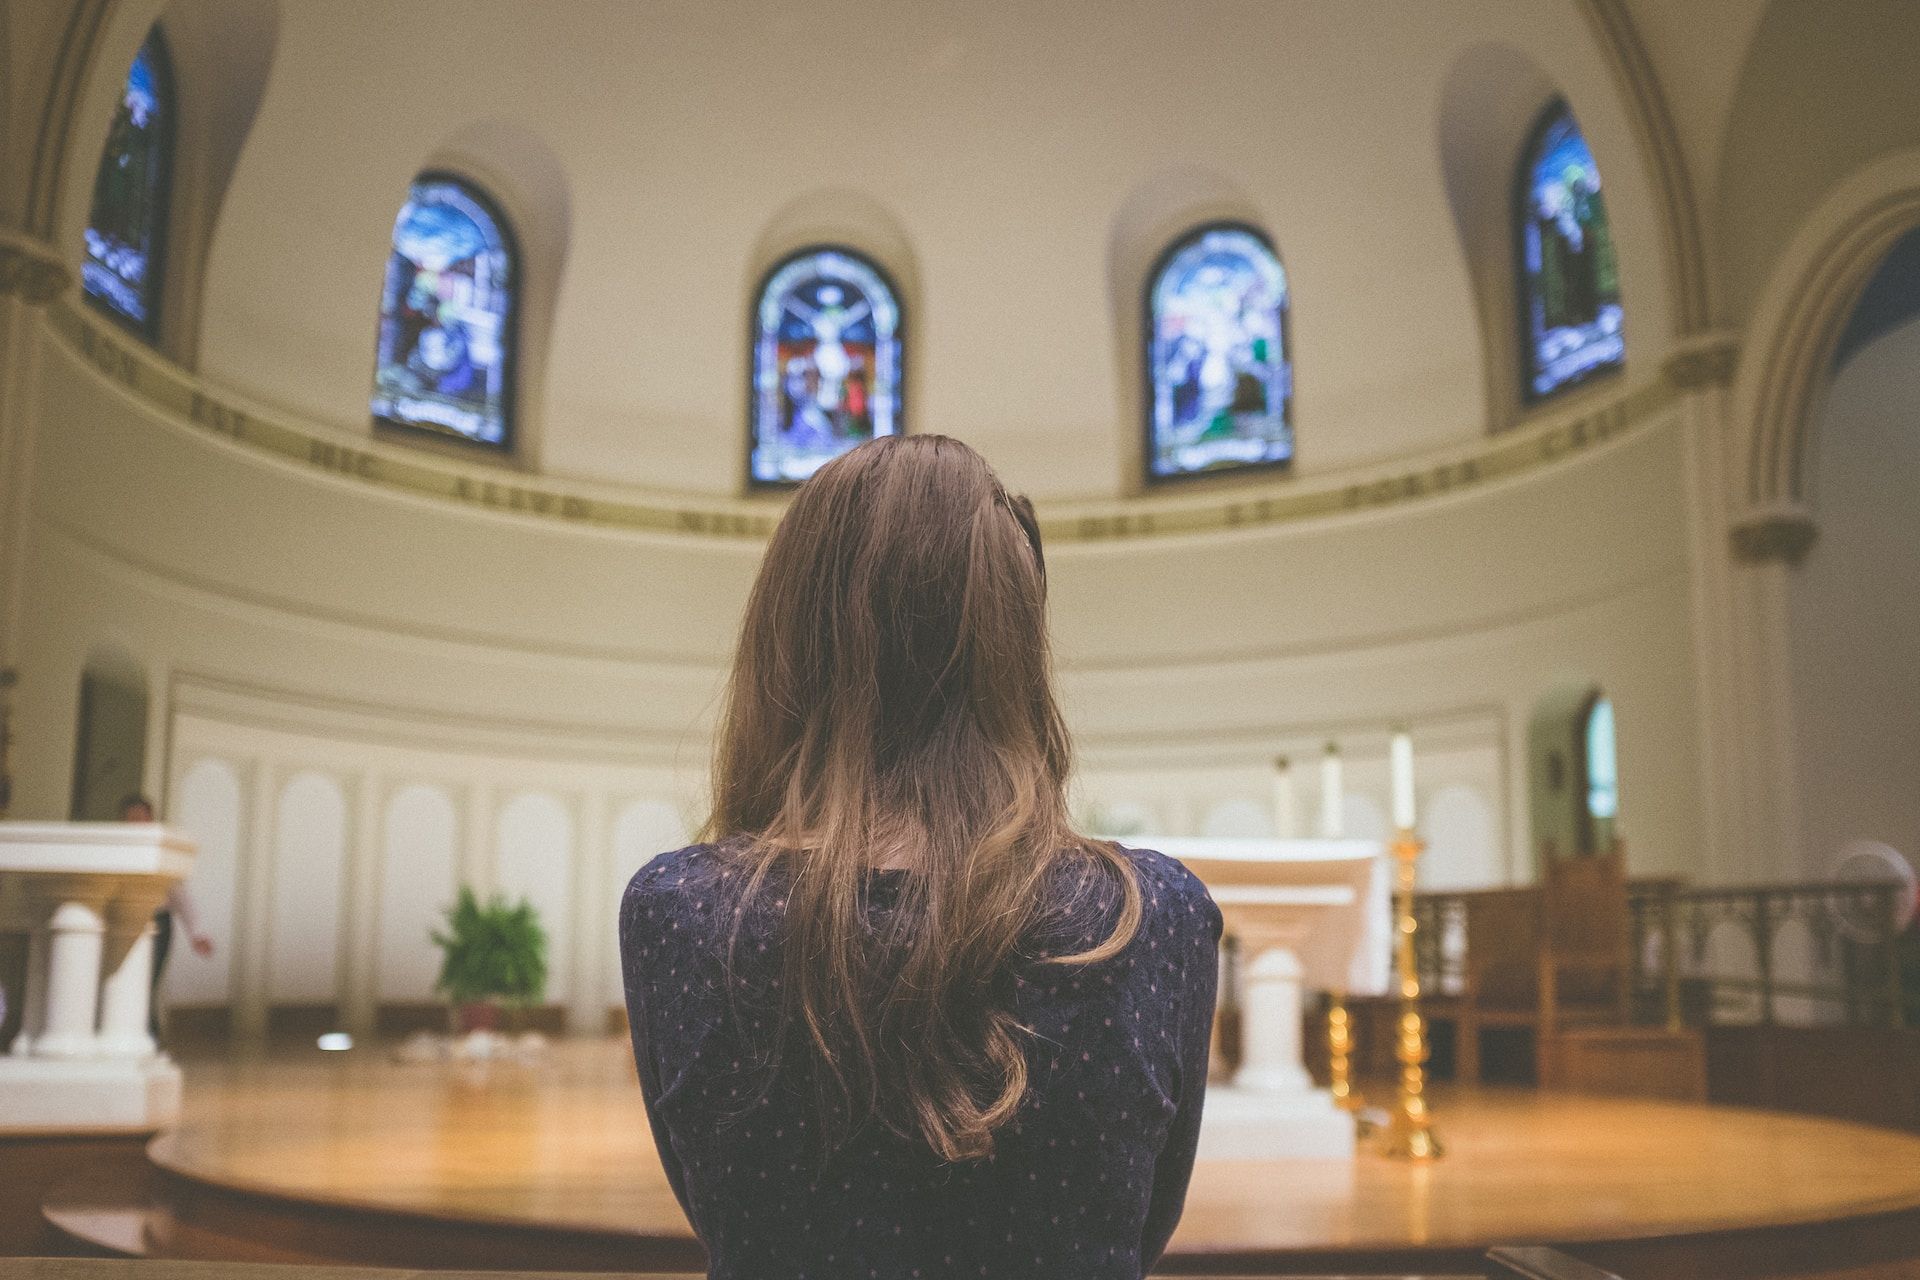 une femme seule, de dos, regardant le choeur d'une église, les vitraux, l'autel - Photo de Kenny Eliason sur https://unsplash.com/fr/photos/b7YCNt1vihM